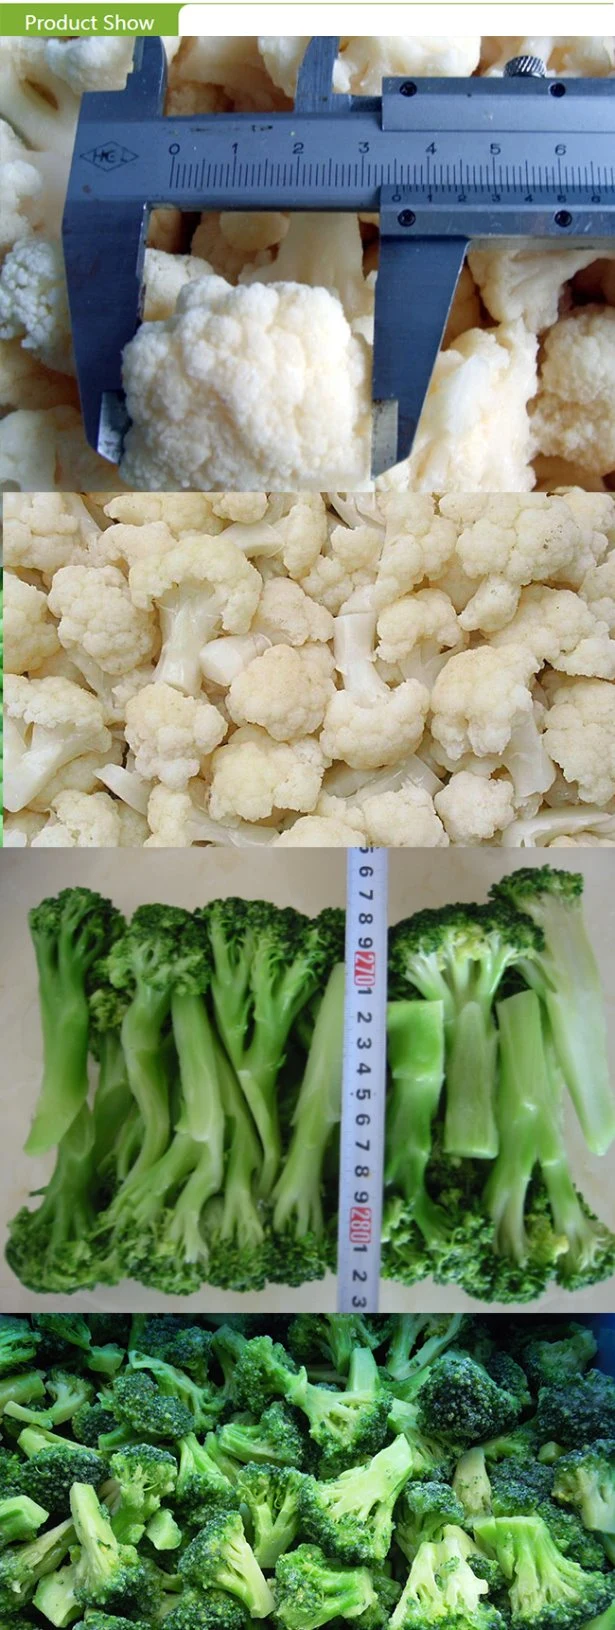 Wholesale Price Broccoli Supplier Frozen Green Vegetables Broccoli IQF Broccoli Cut